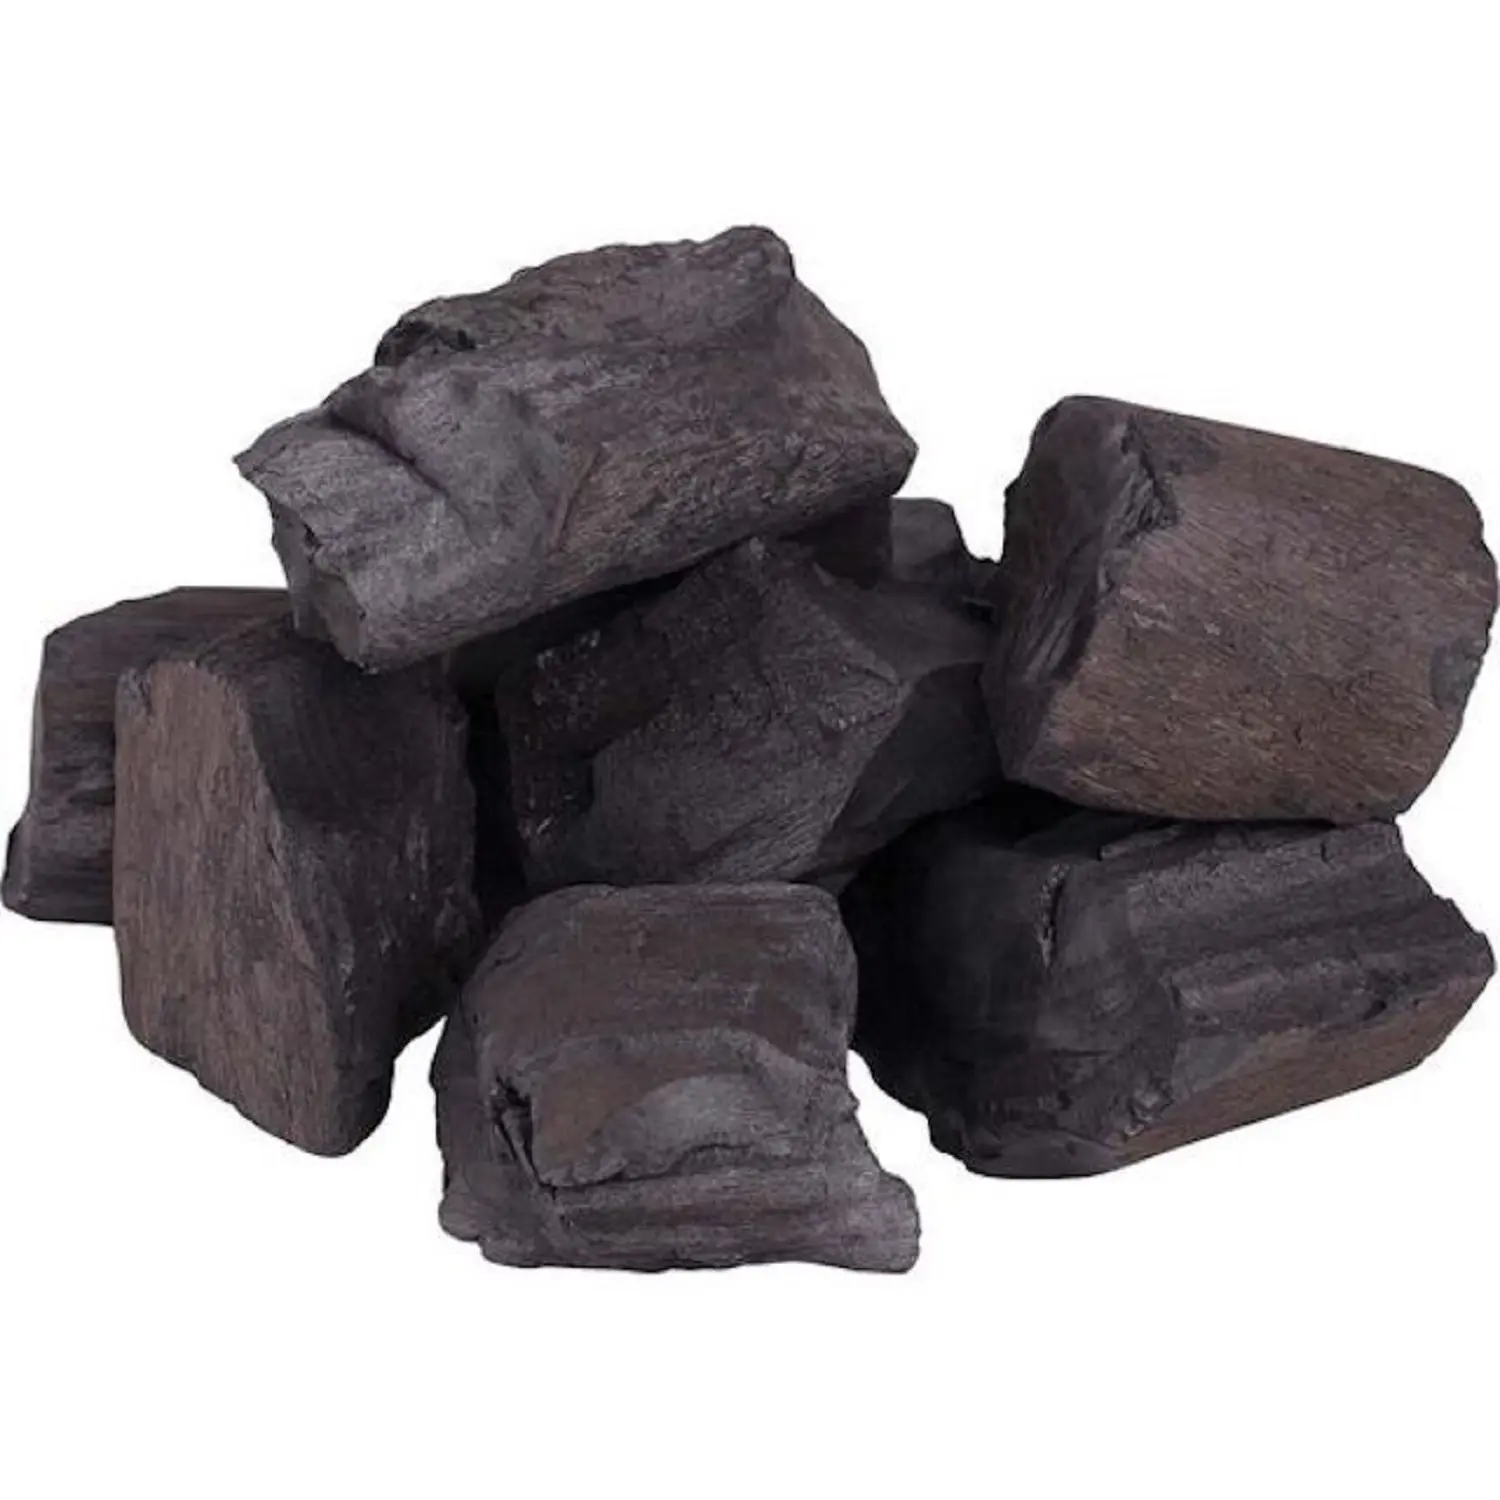 100% carbone cubano di alta qualità in vendita